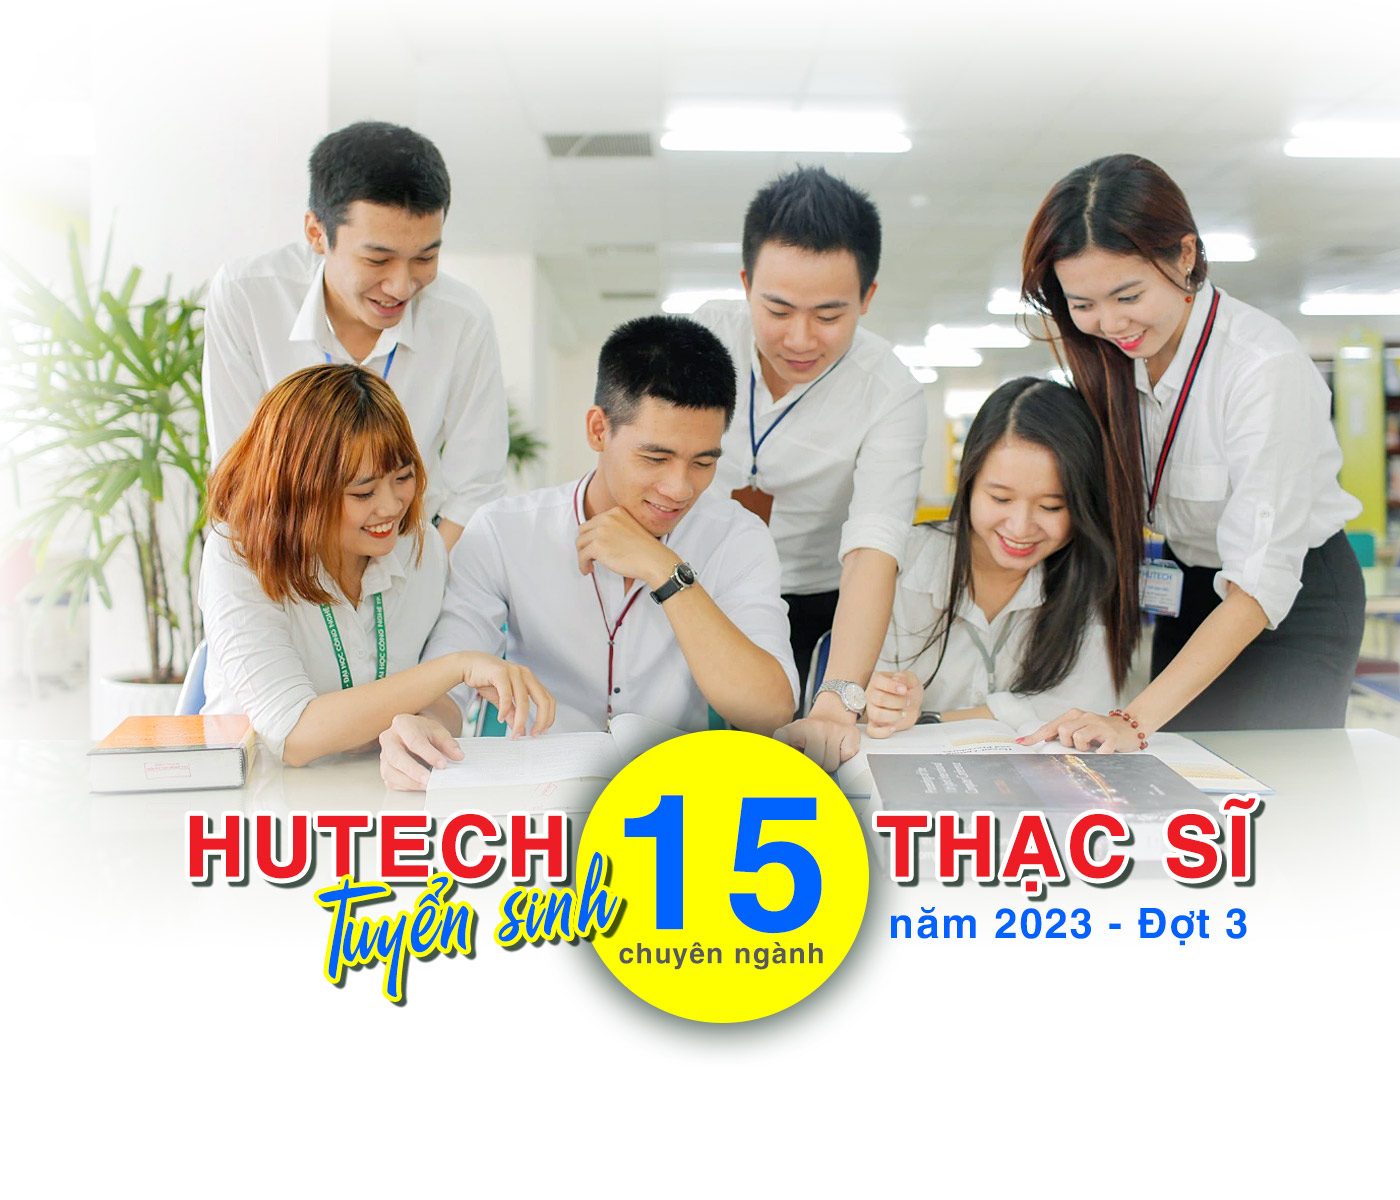 HUTECH tuyển sinh 15 chuyên ngành thạc sĩ năm 2023 - Đợt 3 - ảnh 1